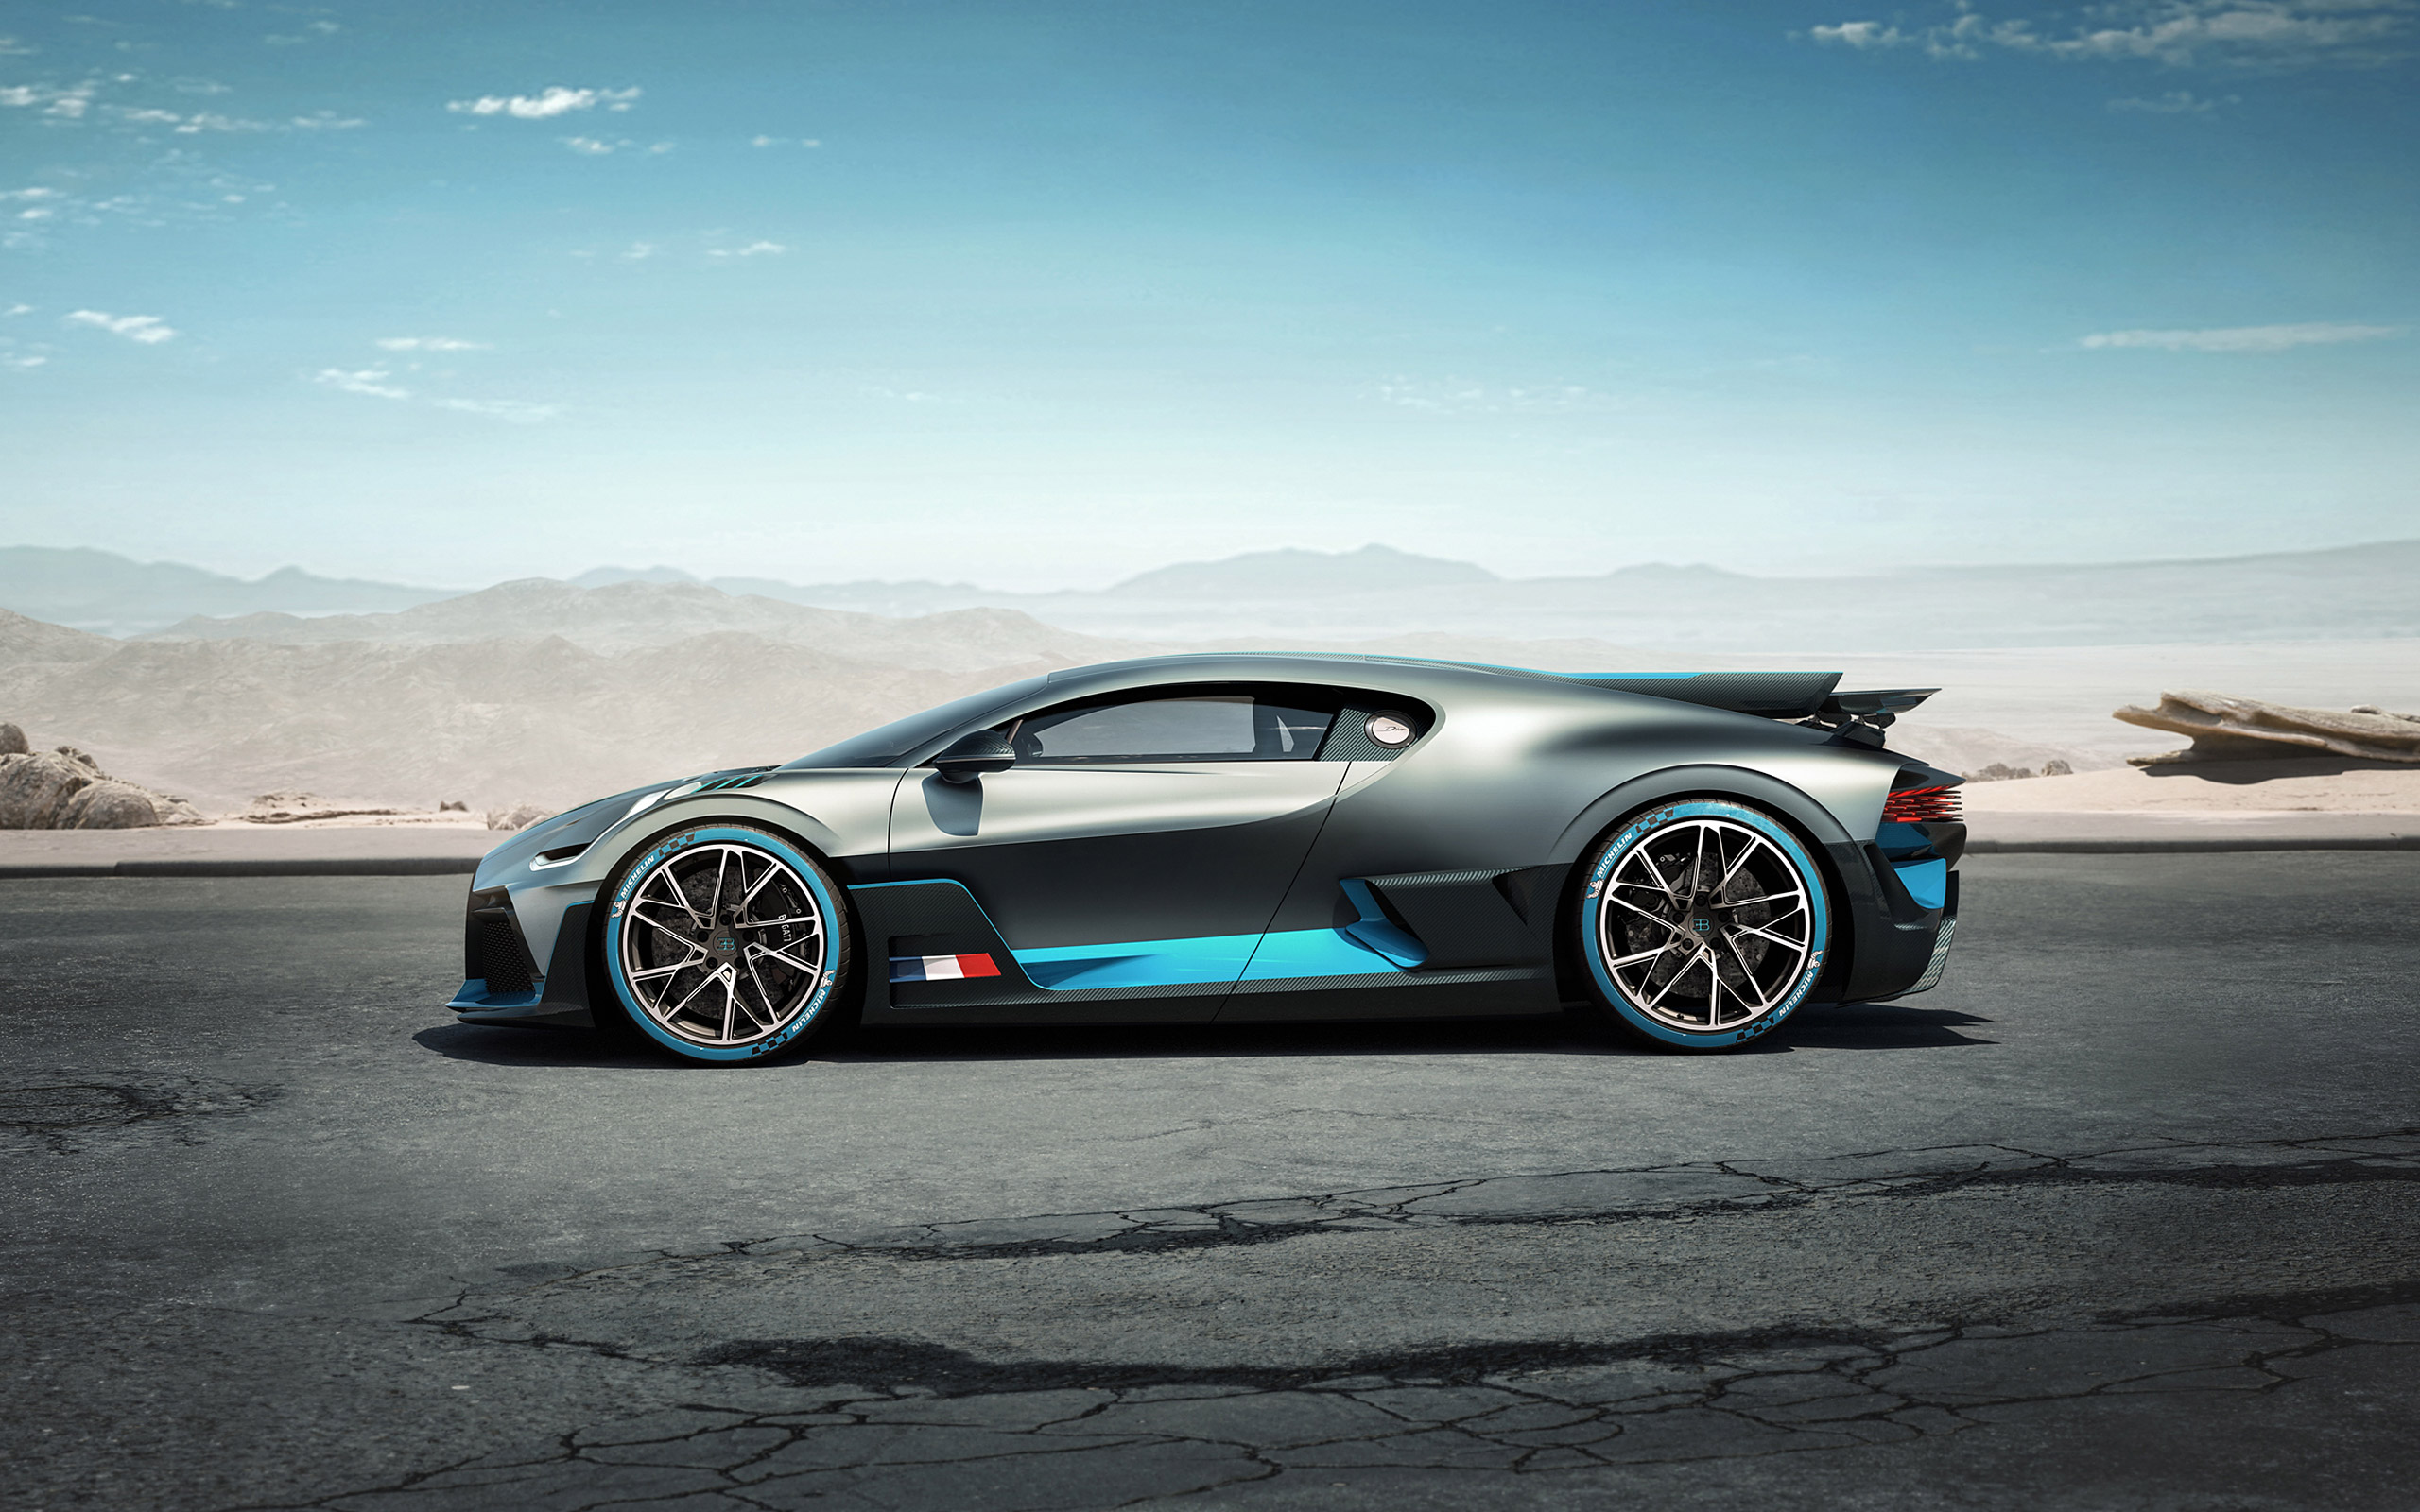  2019 Bugatti Divo Wallpaper.